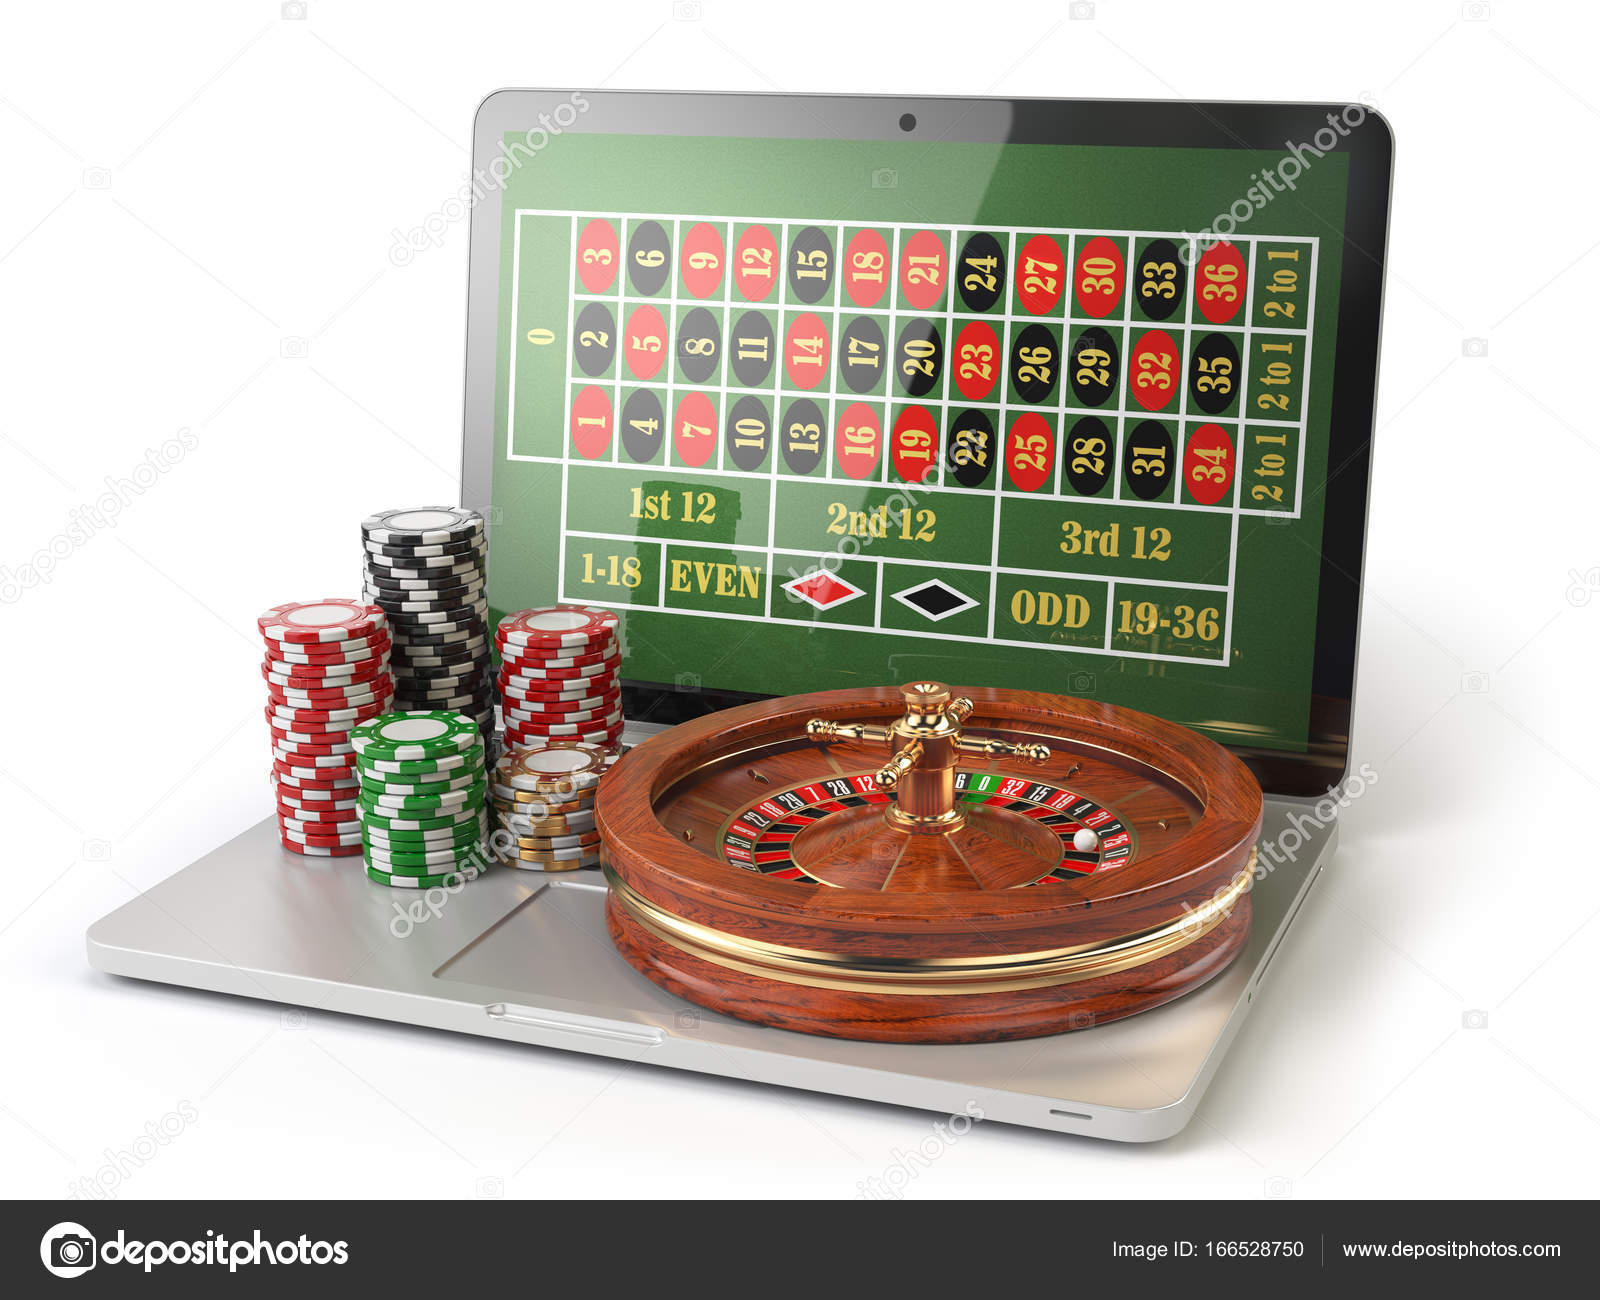 Slot v casino online